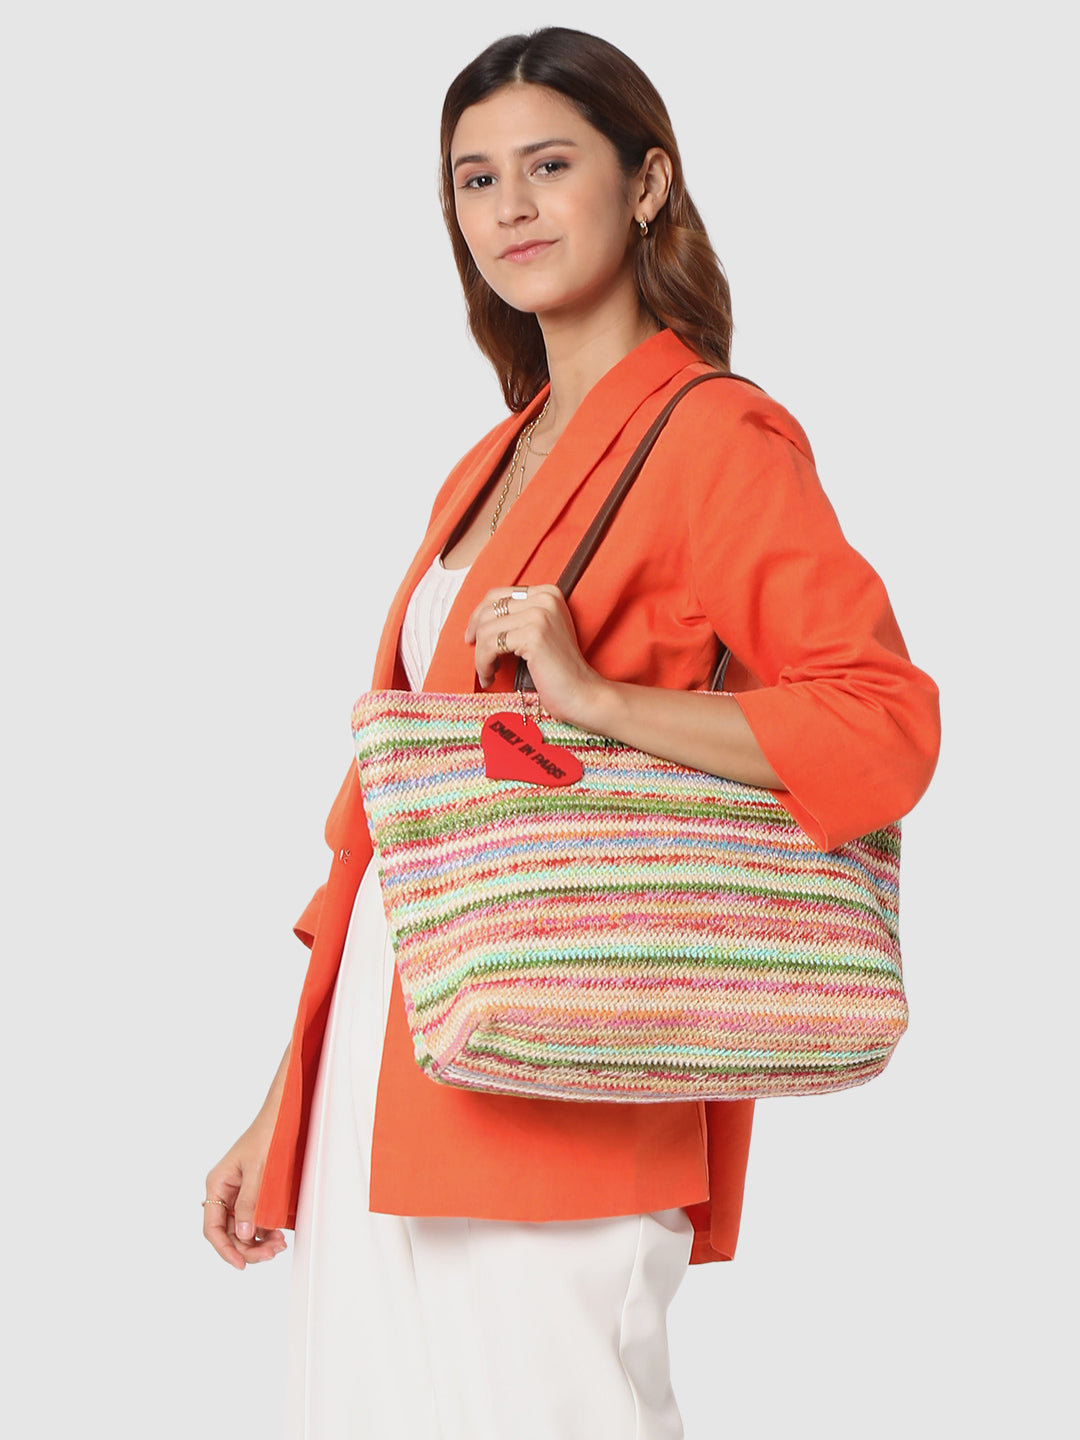 Caprese Emily in Paris Printed Tote Handbag – Caprese Bags